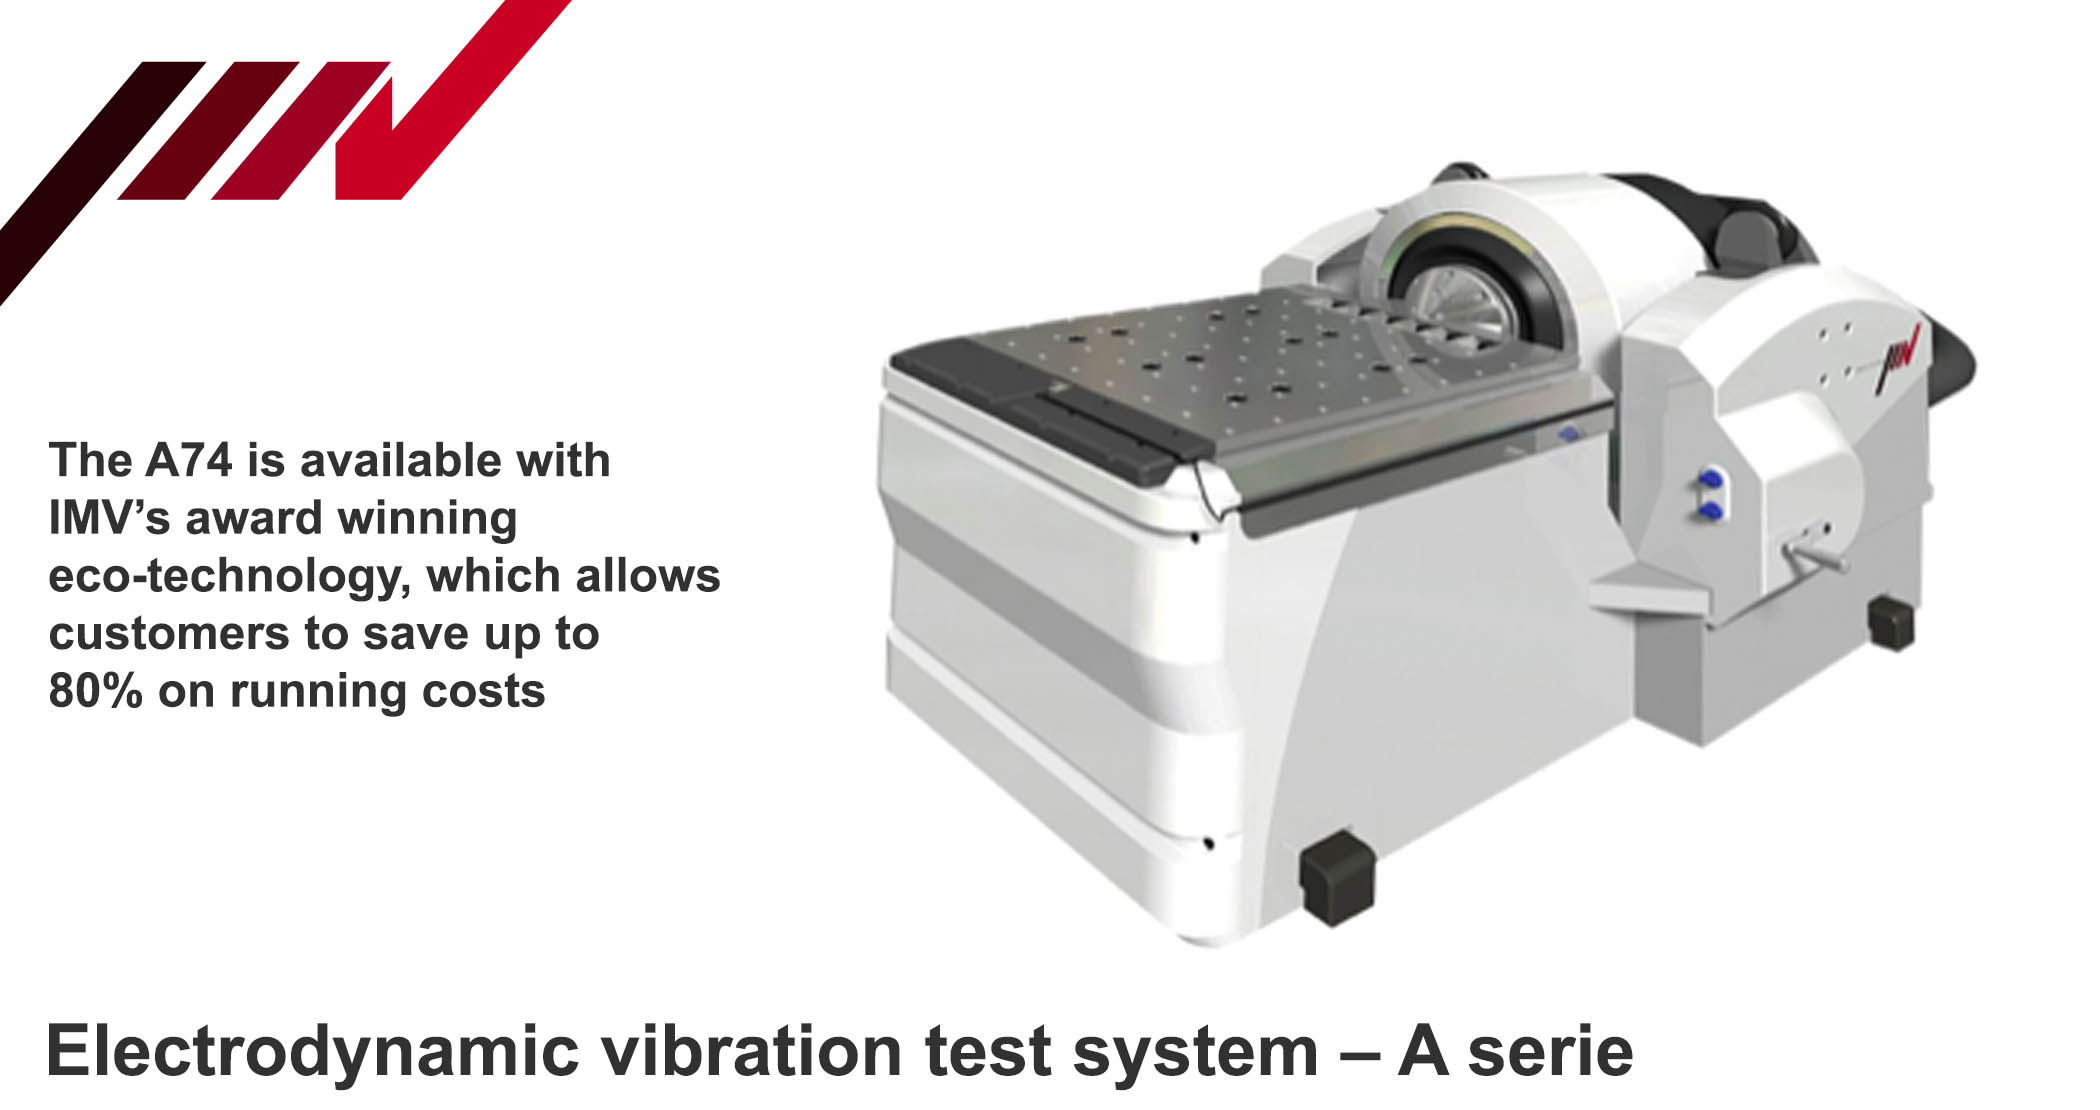 Electrodynamic vibration test system, A74, IMV